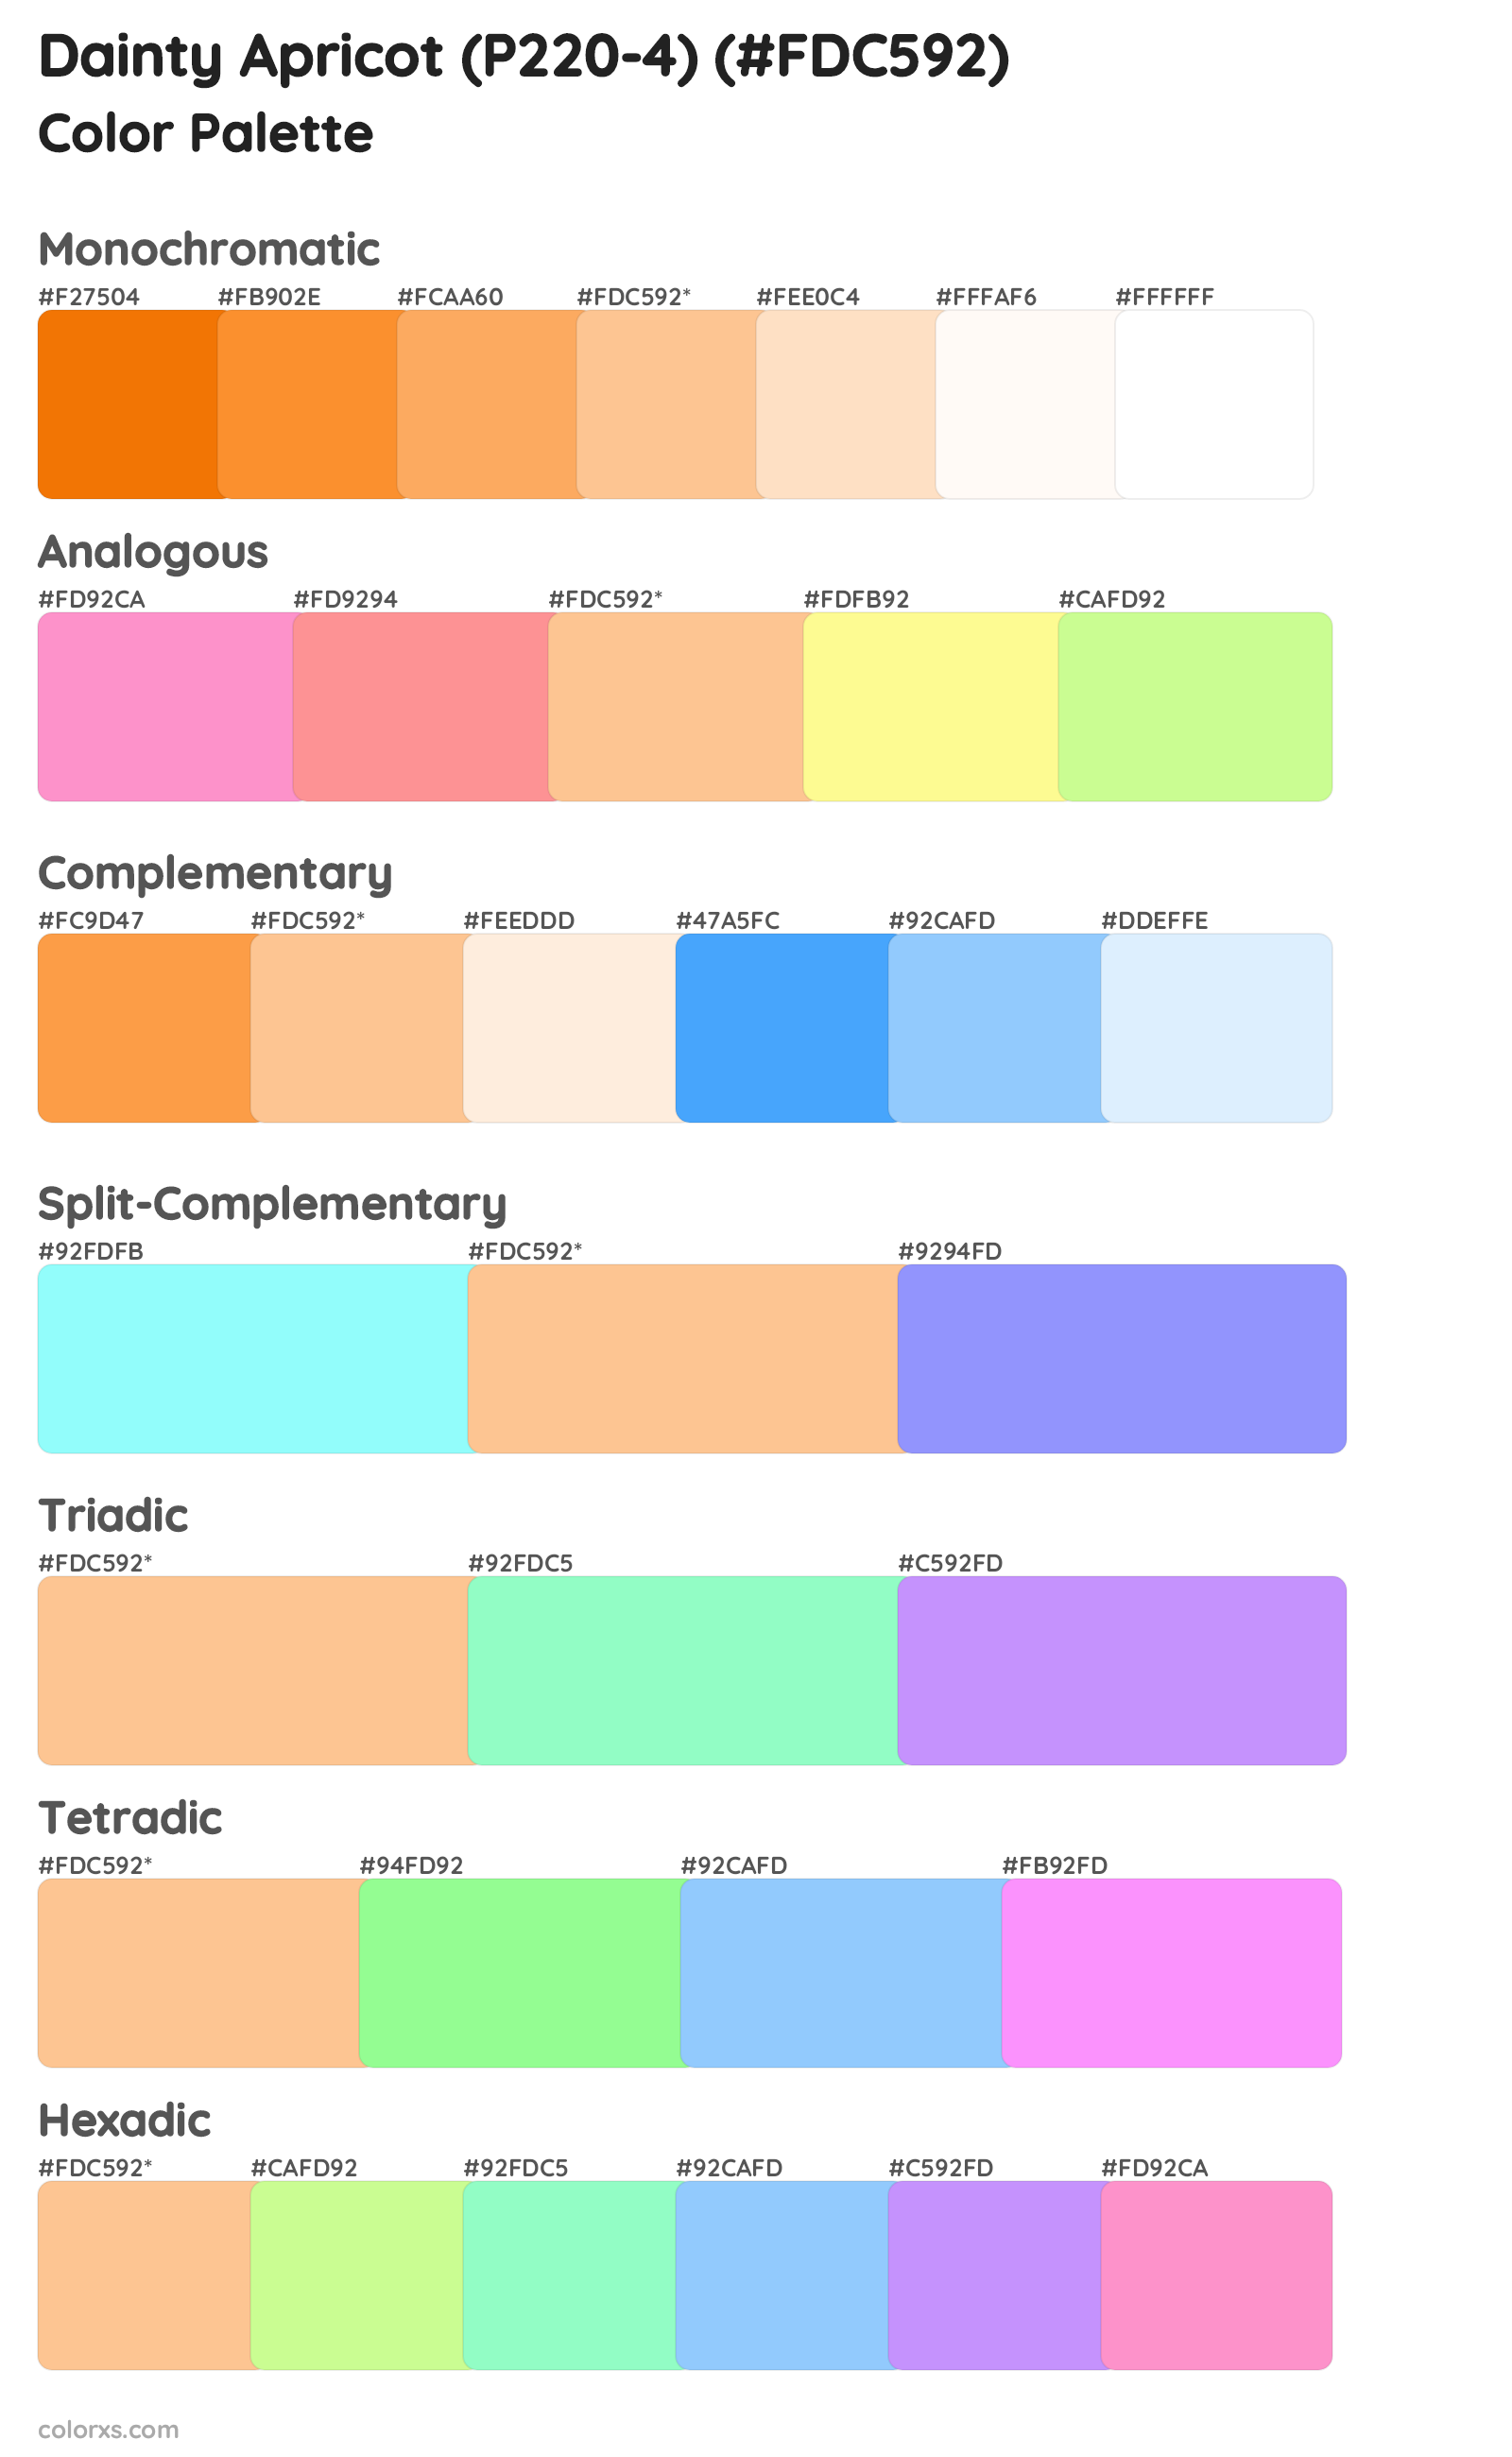 Dainty Apricot (P220-4) Color Scheme Palettes